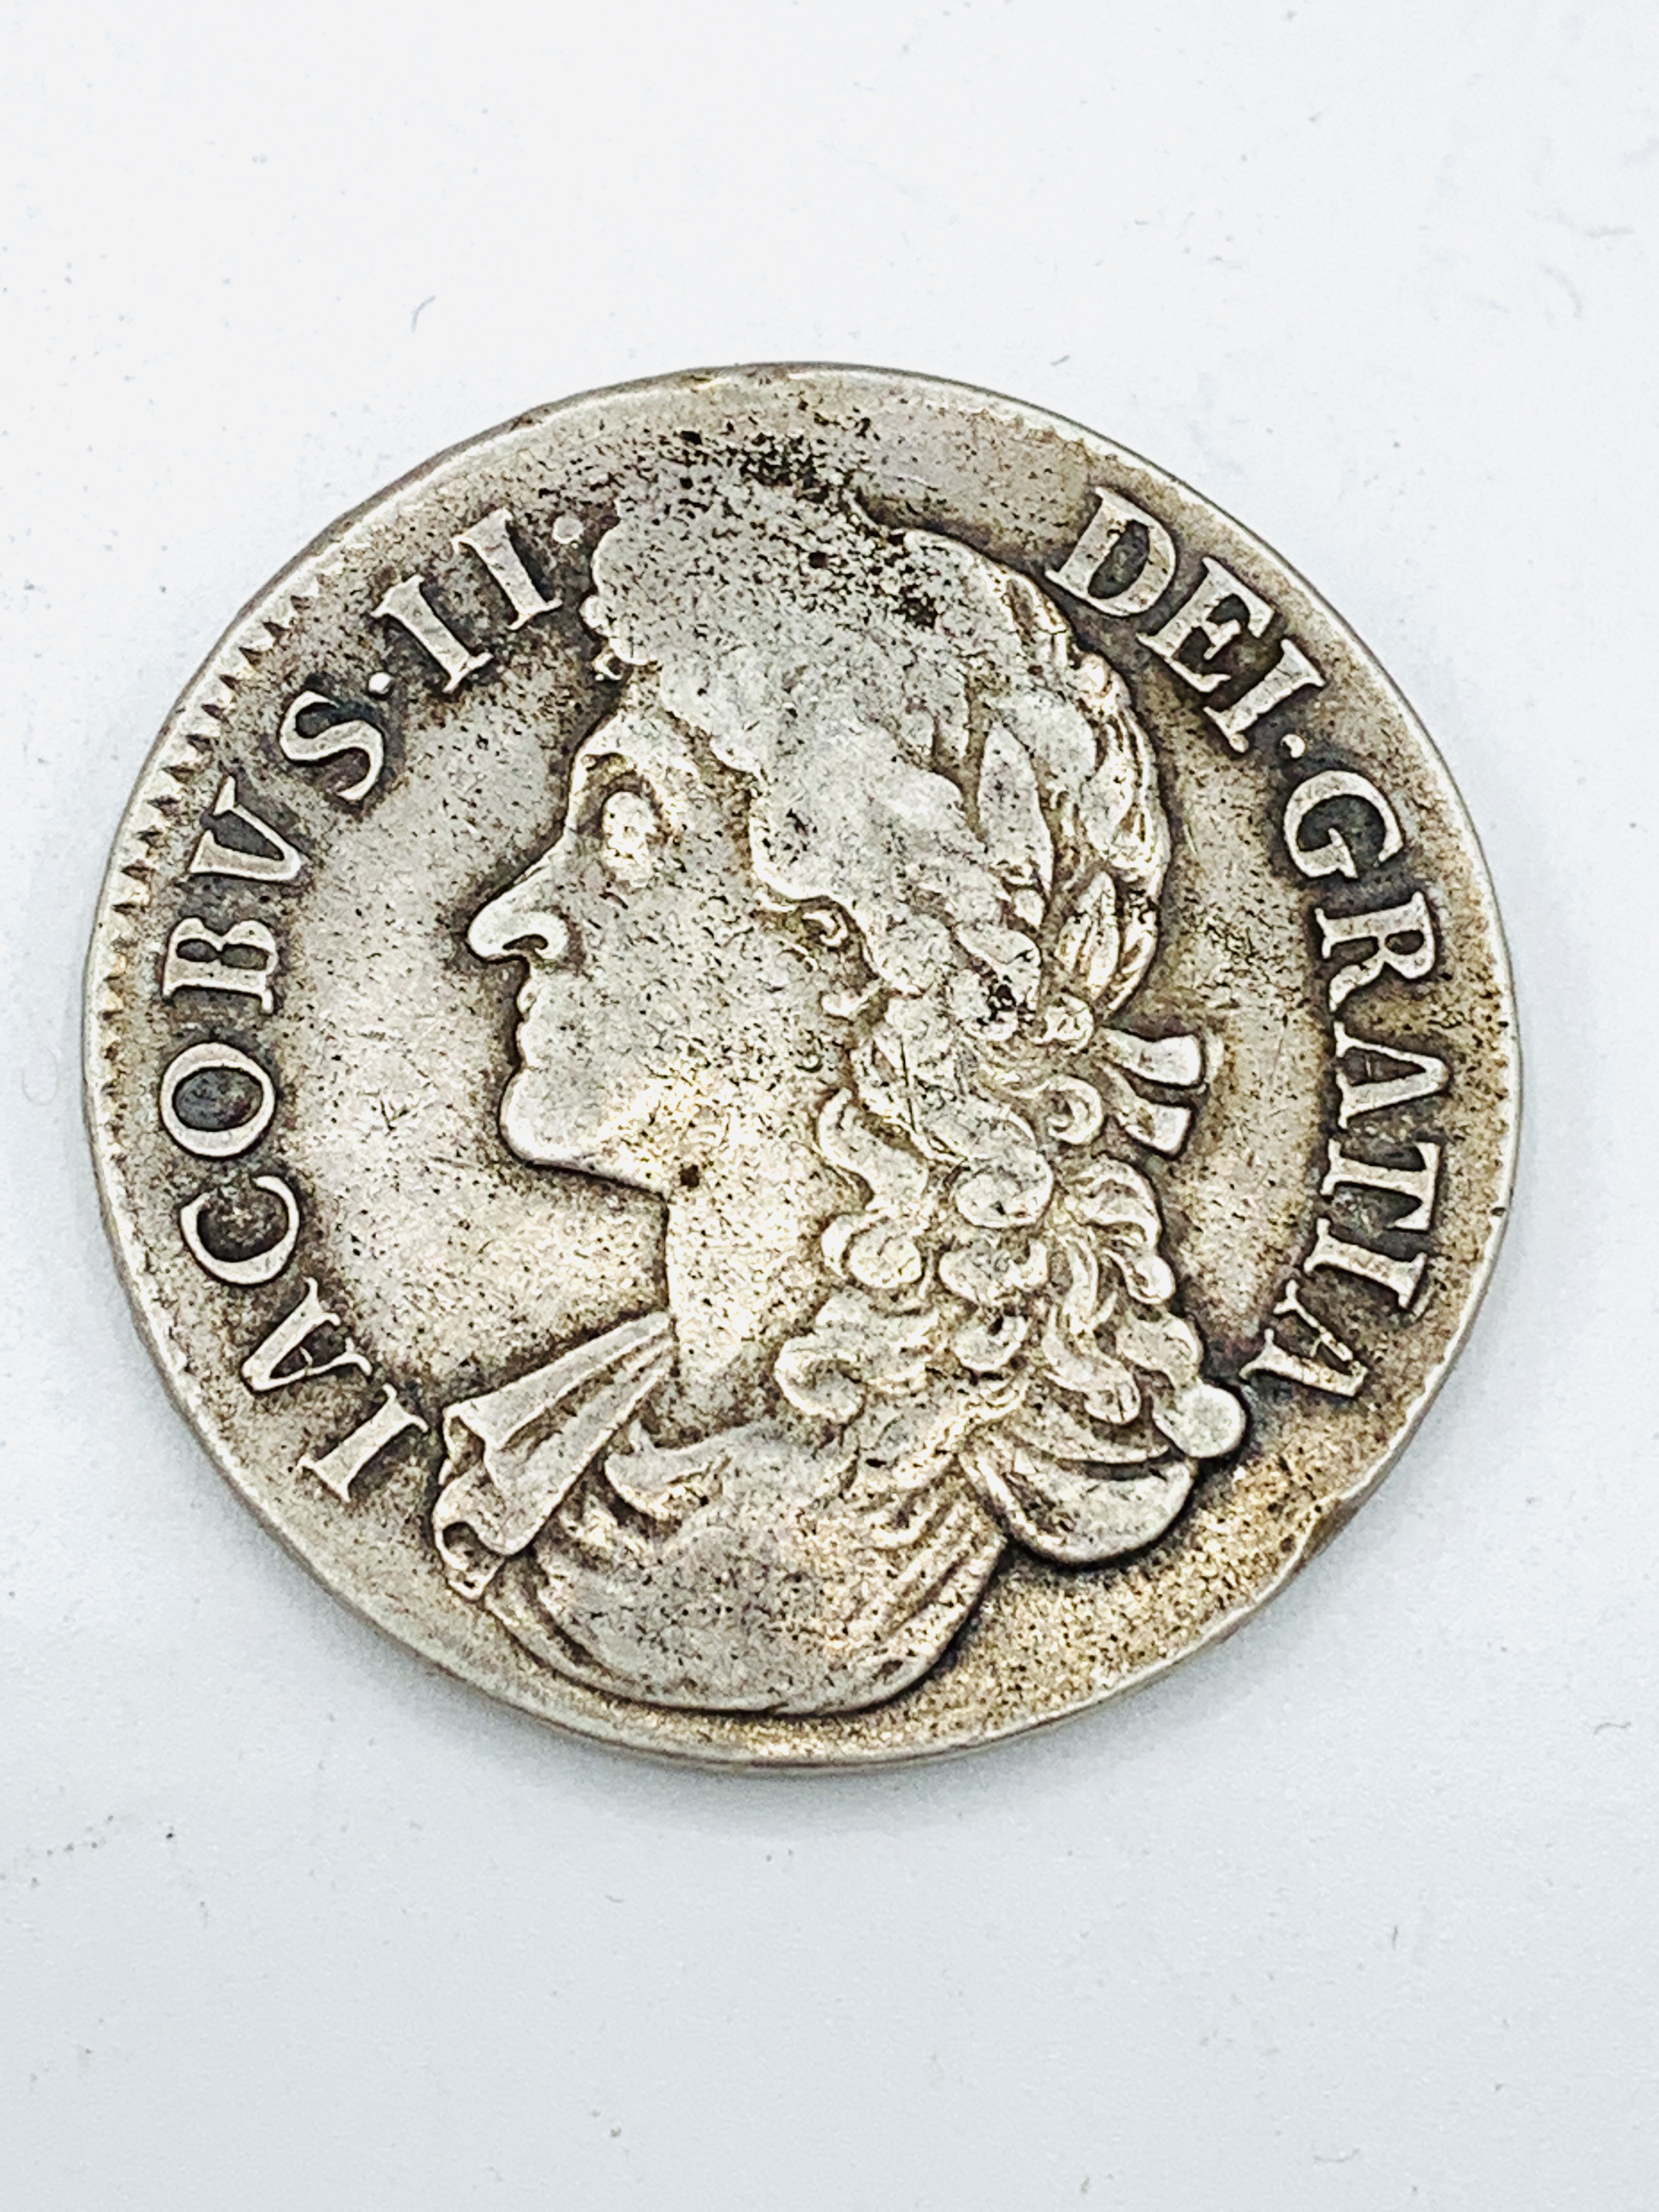 James II silver crown 1687